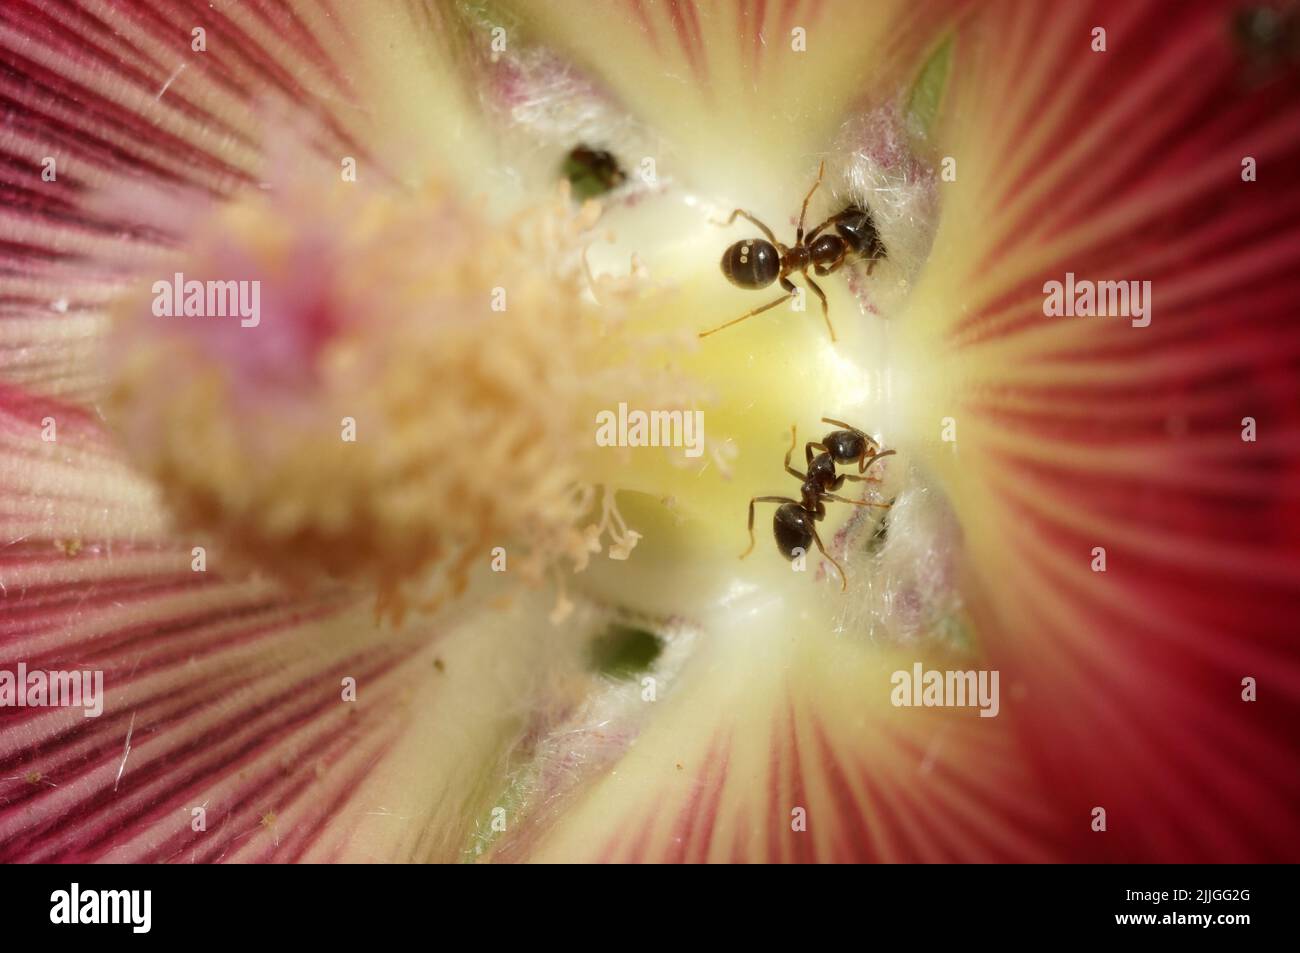 Ameisen sammeln Pollen. Stock Photo